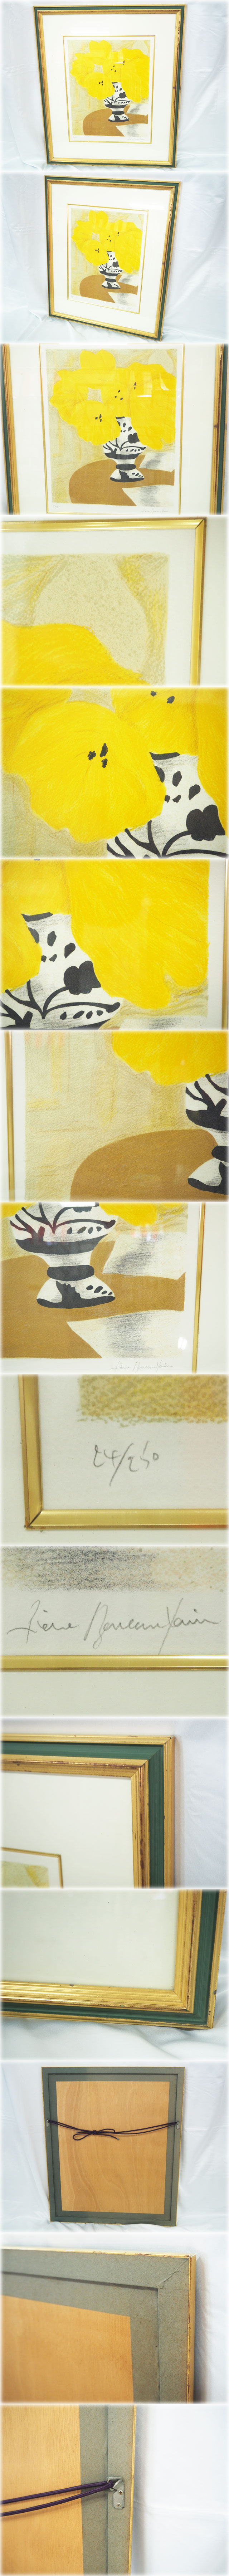 【早割】ピエール・ボンコンパン リトグラフ 「テーブルの上の黄色いブーケ」 額付 鉛筆サインNo.24/250 Pierre Boncompain 石版画、リトグラフ